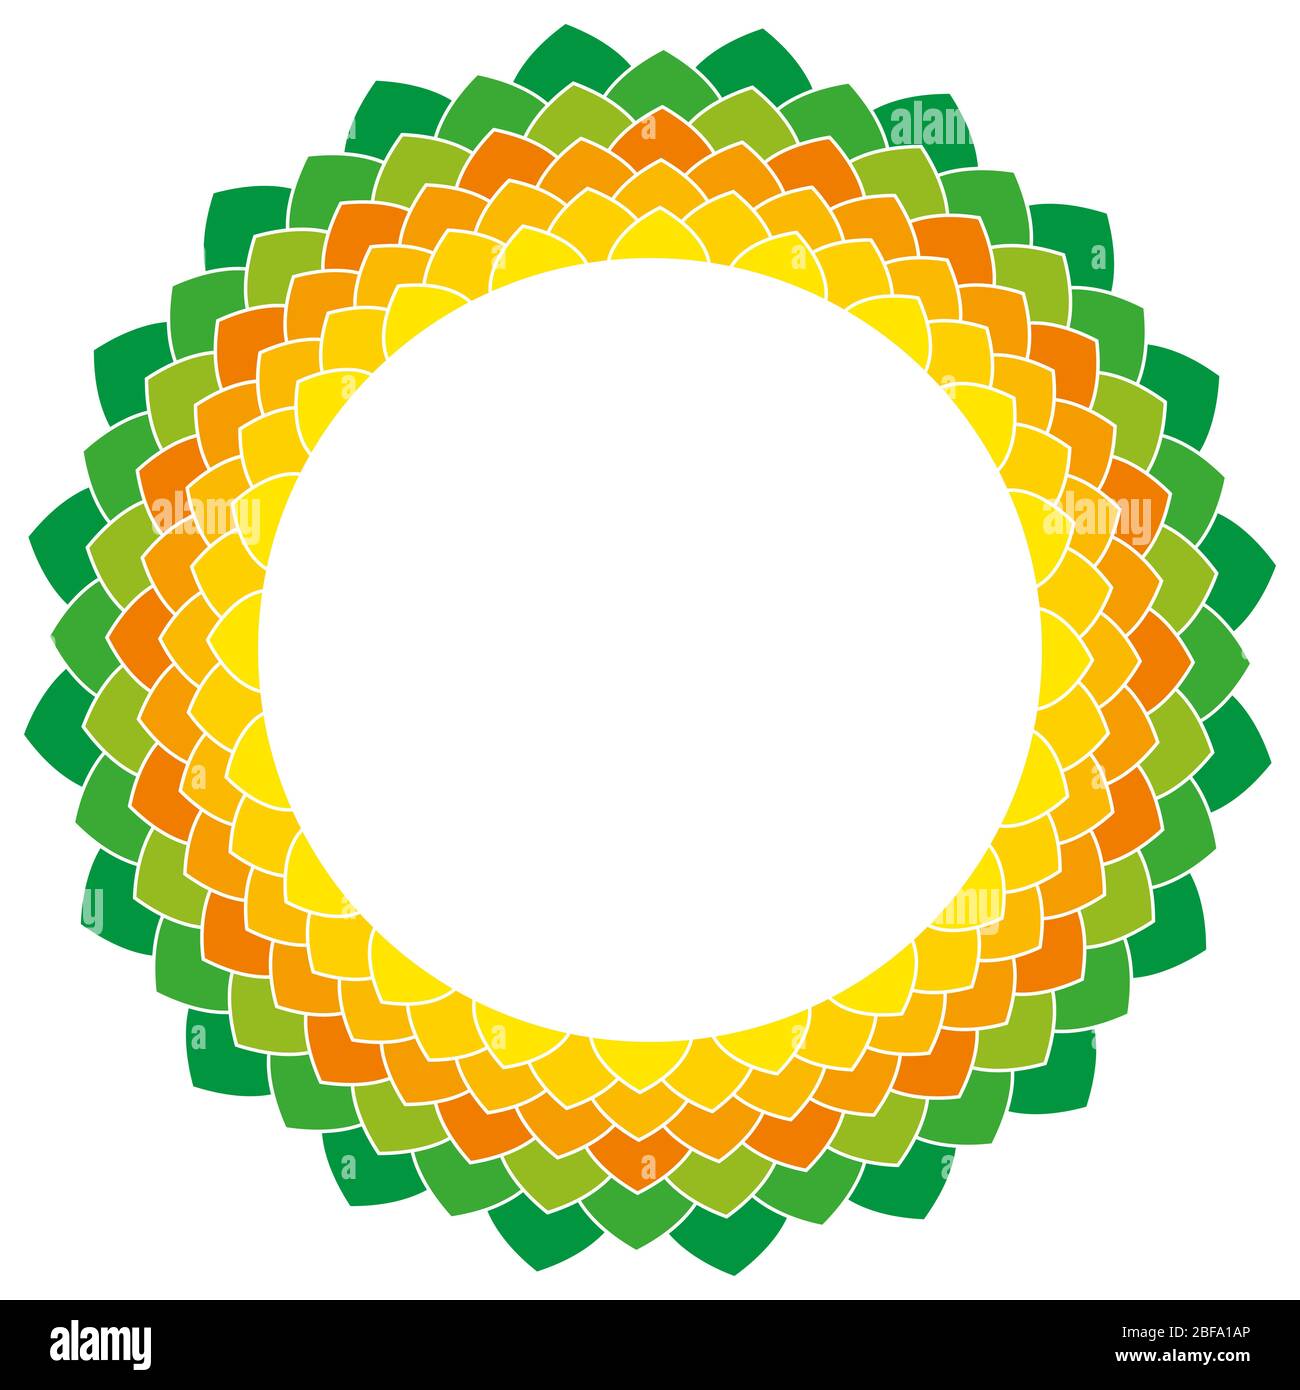 Abstrakt bunte Blume Symbol Rahmen. Gelbe, orange und grüne Blütenblätter bilden ein blütenähnliches Zeichen. Abbildung auf weißem Hintergrund. Stockfoto